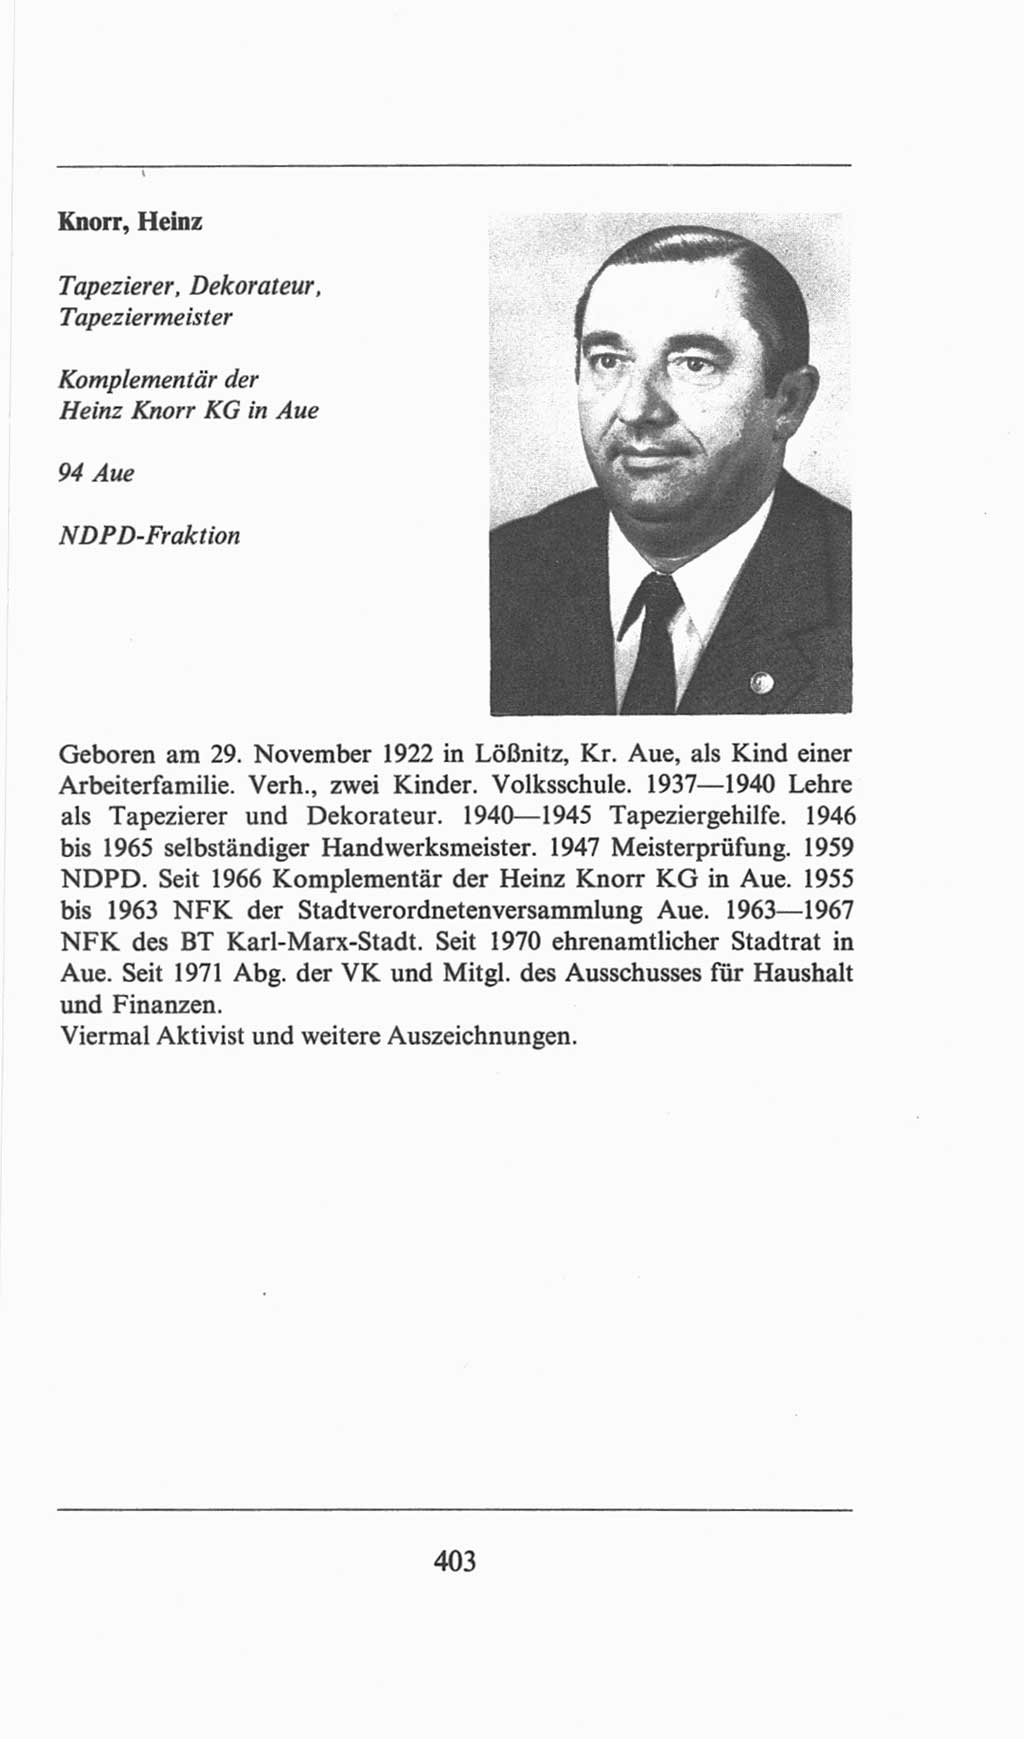 Volkskammer (VK) der Deutschen Demokratischen Republik (DDR), 6. Wahlperiode 1971-1976, Seite 403 (VK. DDR 6. WP. 1971-1976, S. 403)